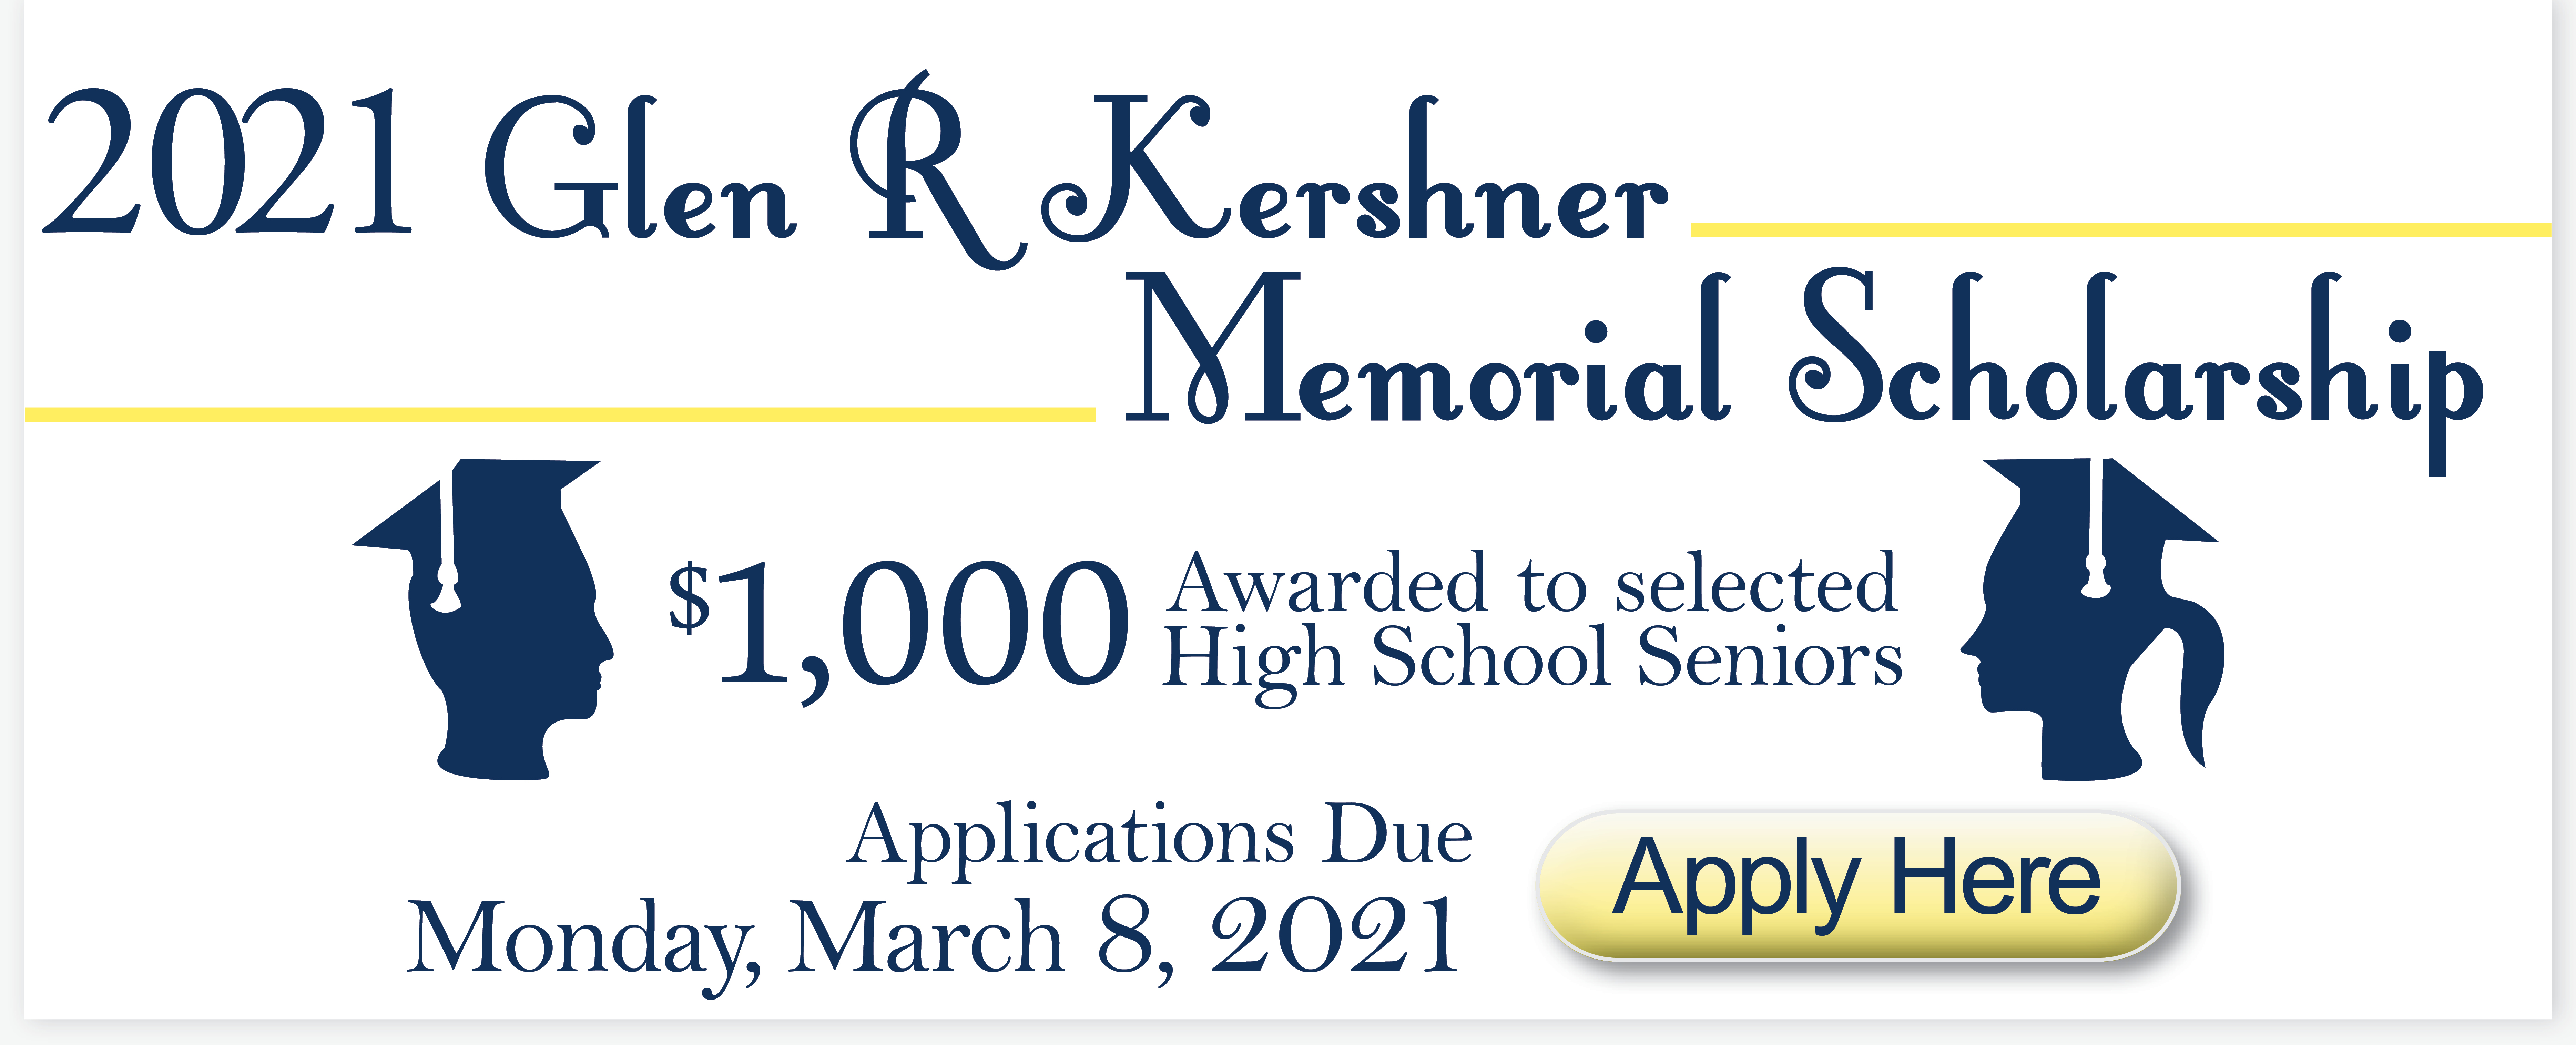 Glen R Kershner Scholarship deadline March 8, 2021